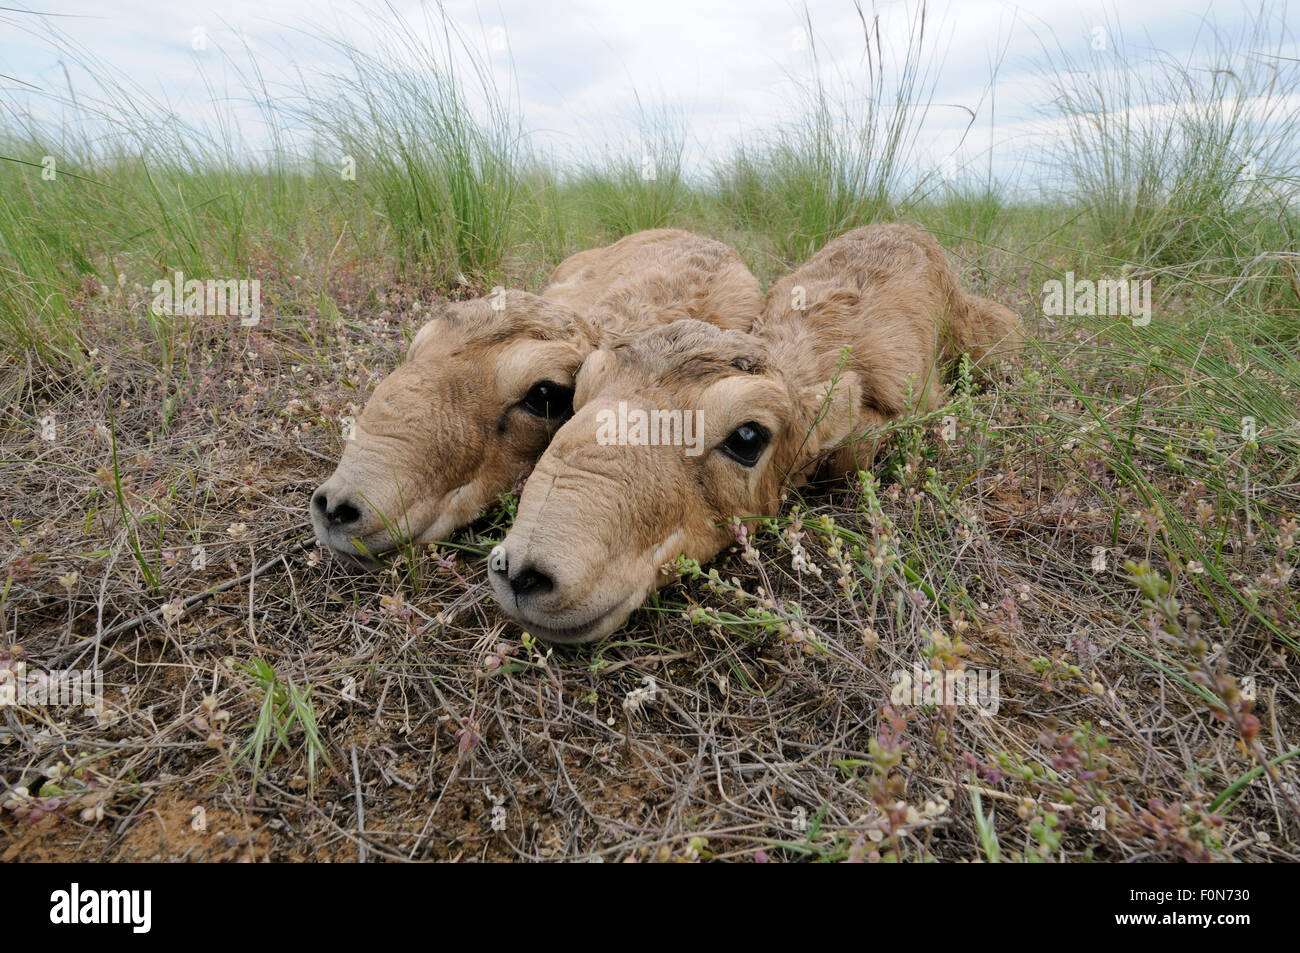 Deux nouveau-né saïga (Saiga tatarica) veaux étendue sur le sol, Cherniye zemli (terre noire), Réserve naturelle de Kalmoukie, en Russie, en mai 2009 Banque D'Images